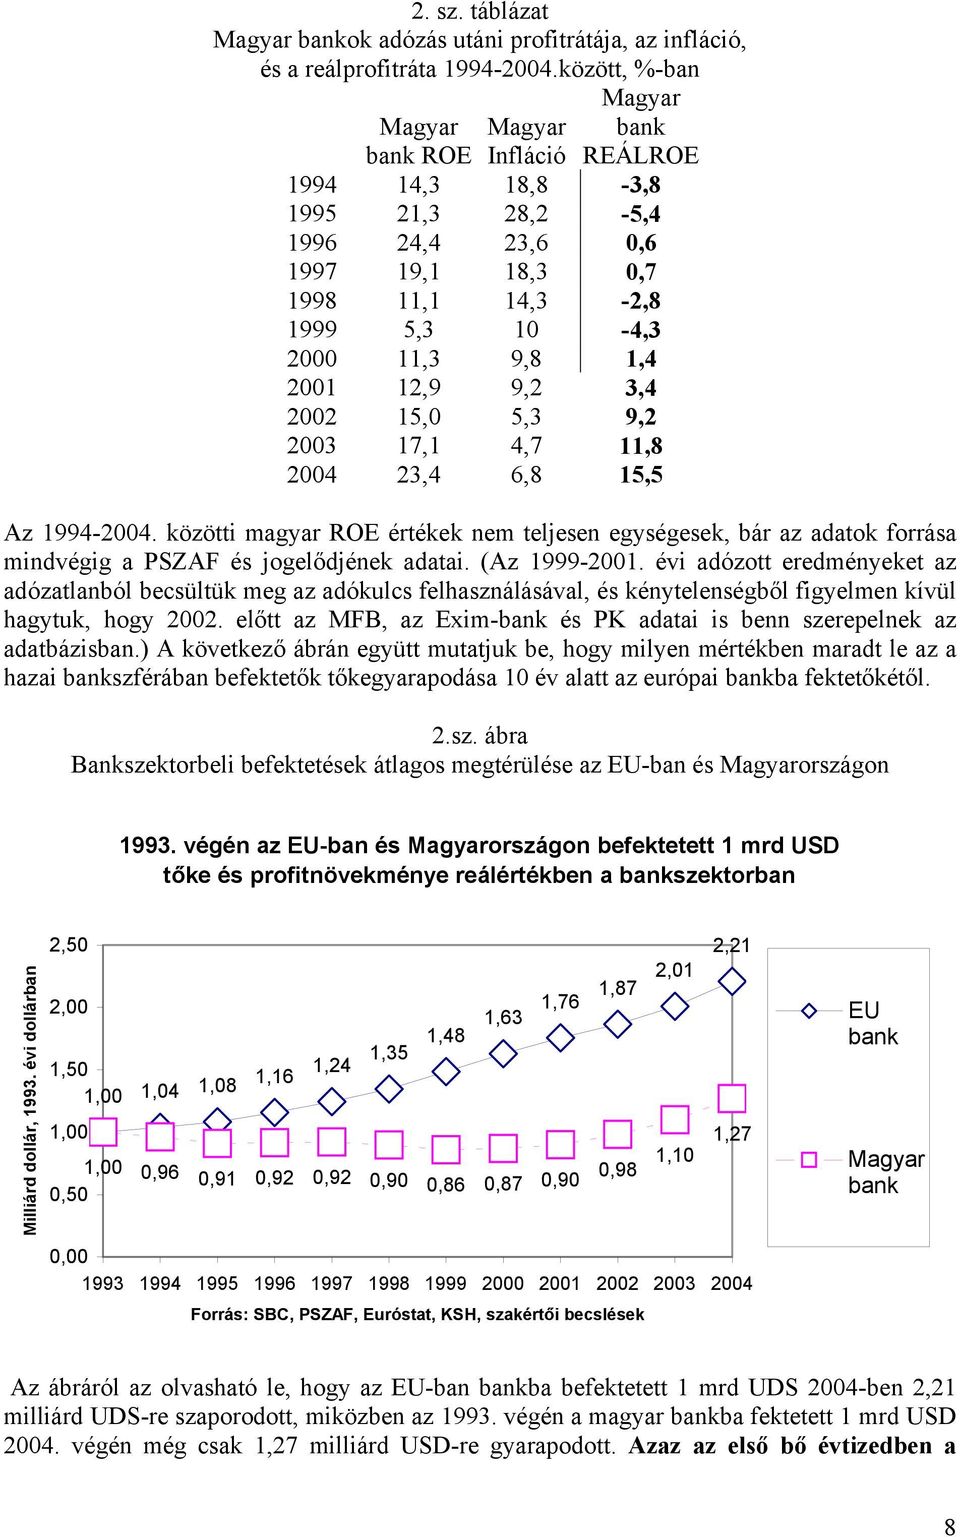 12,9 9,2 3,4 2002 15,0 5,3 9,2 2003 17,1 4,7 11,8 2004 23,4 6,8 15,5 Az 1994-2004. közötti magyar ROE értékek nem teljesen egységesek, bár az adatok forrása mindvégig a PSZAF és jogelődjének adatai.